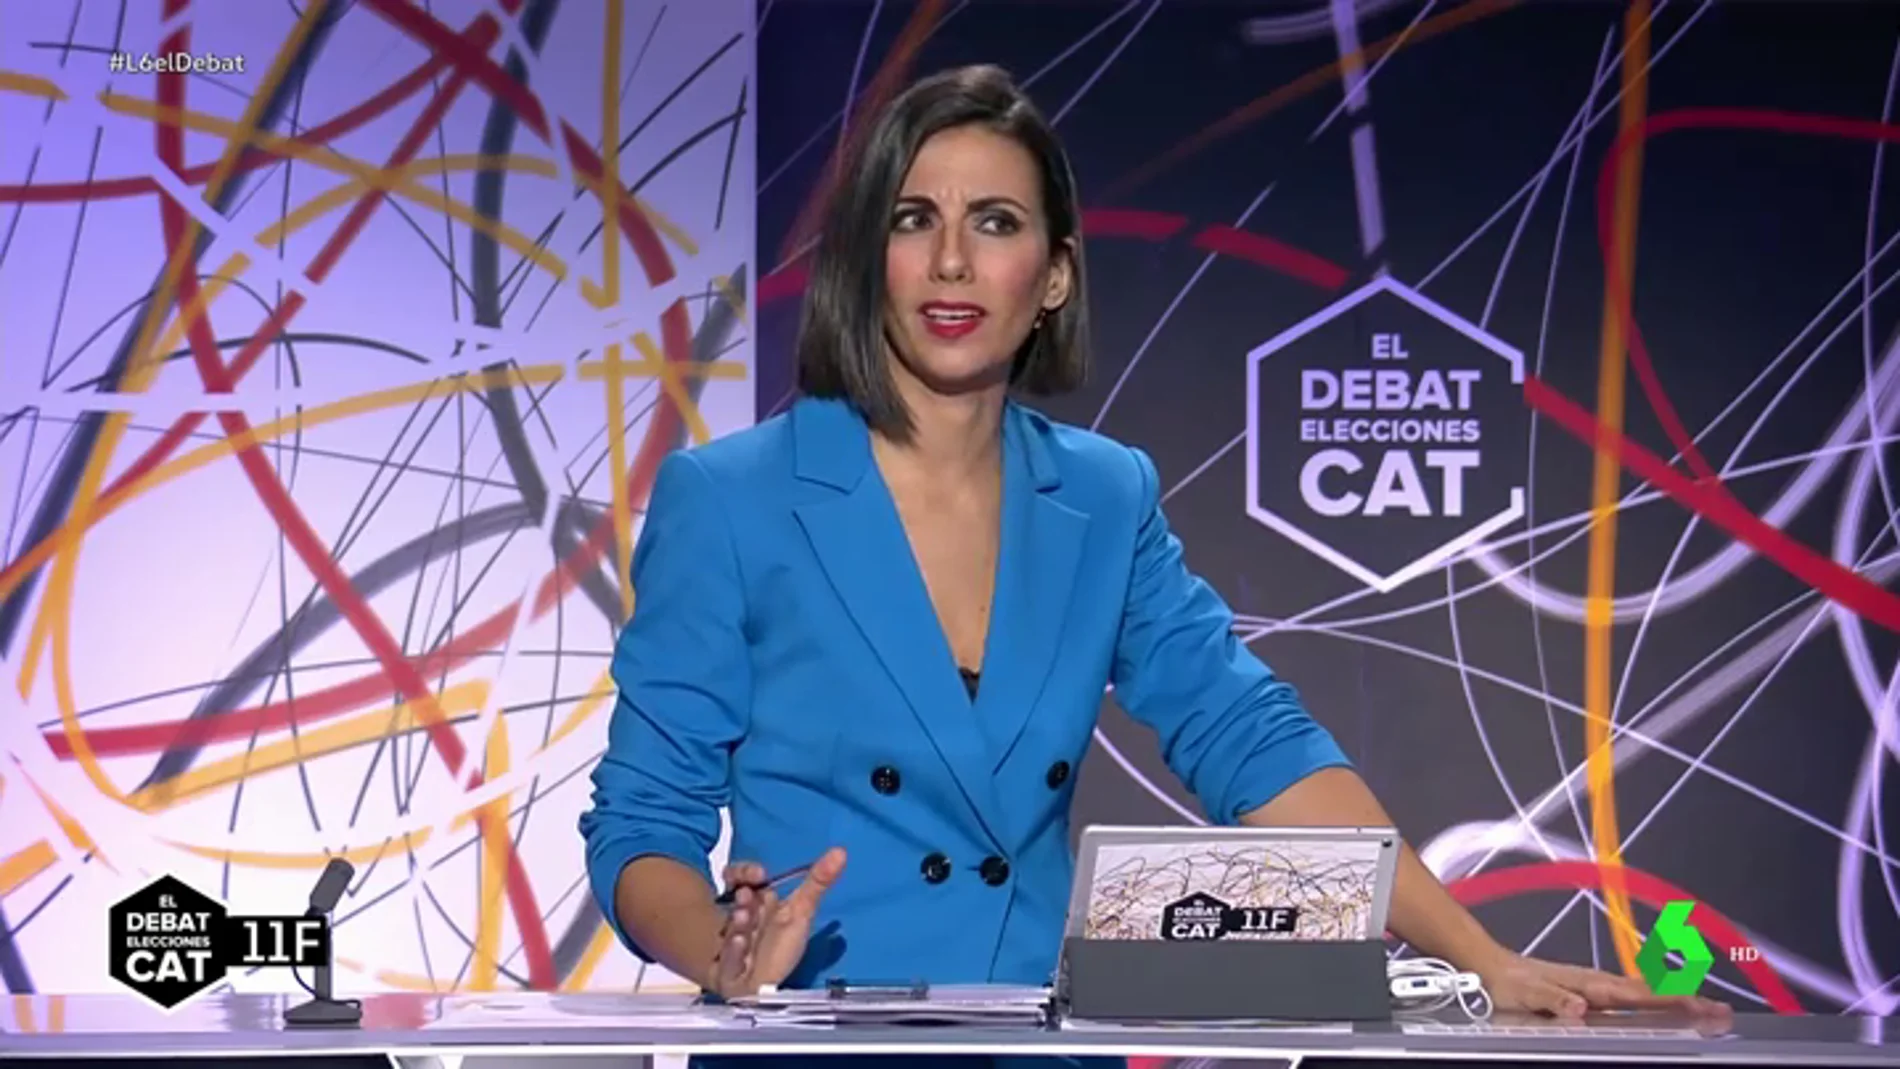 El toque de atención de Ana Pastor a los candidatos por los gritos e insultos en 'El Debat': "Evitemos un debate de este tipo"